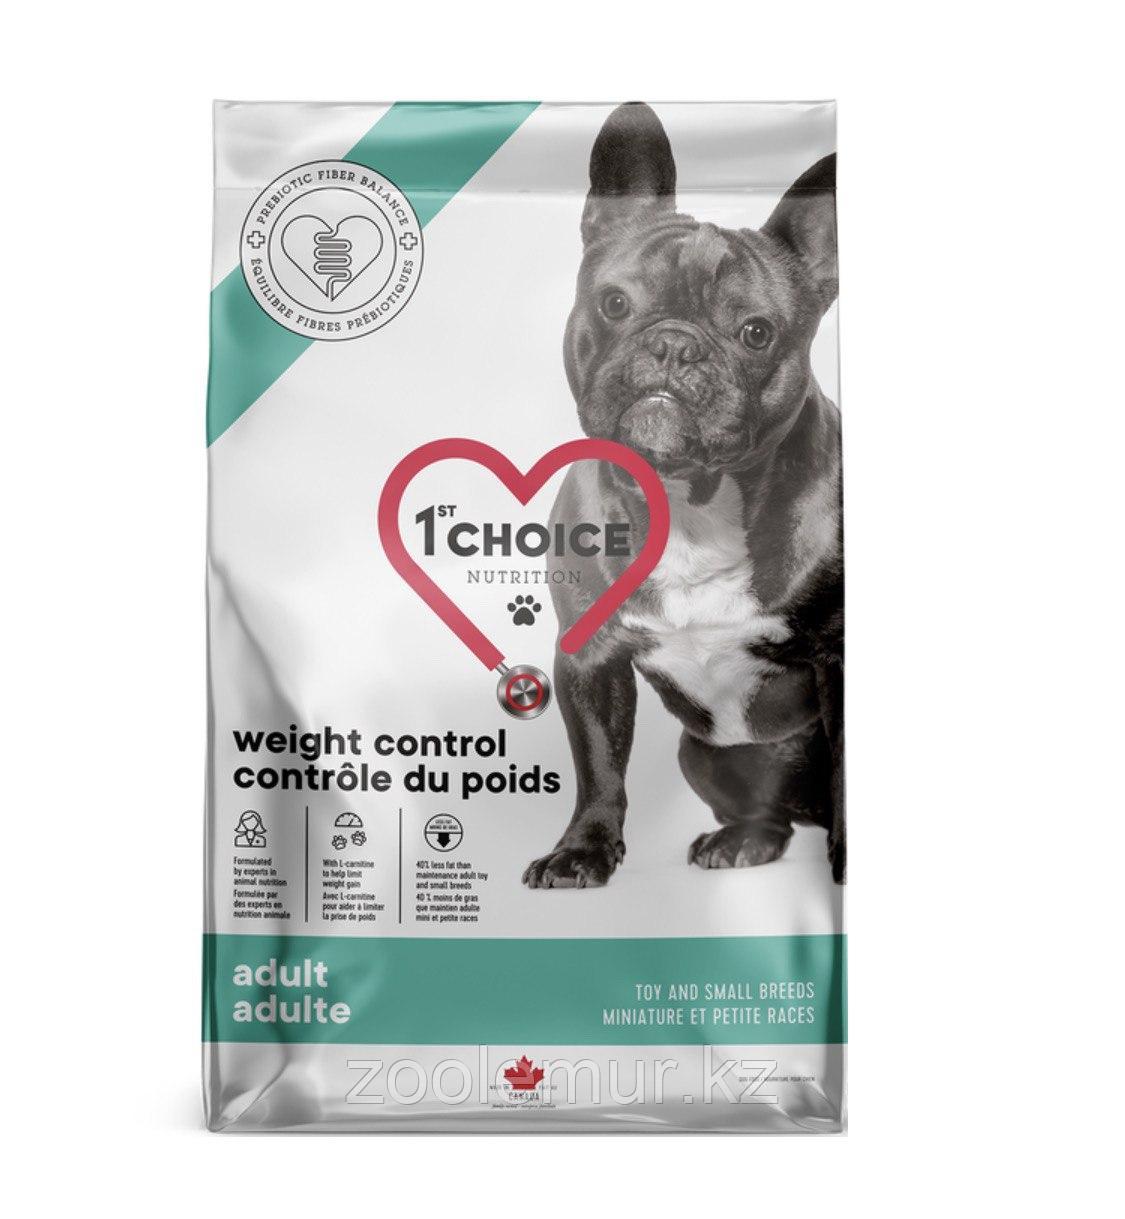 1`st CHOICE WEIGHT CONTROL Контроль Веса сухой корм для взрослых собак малых и средних пород, 2кг